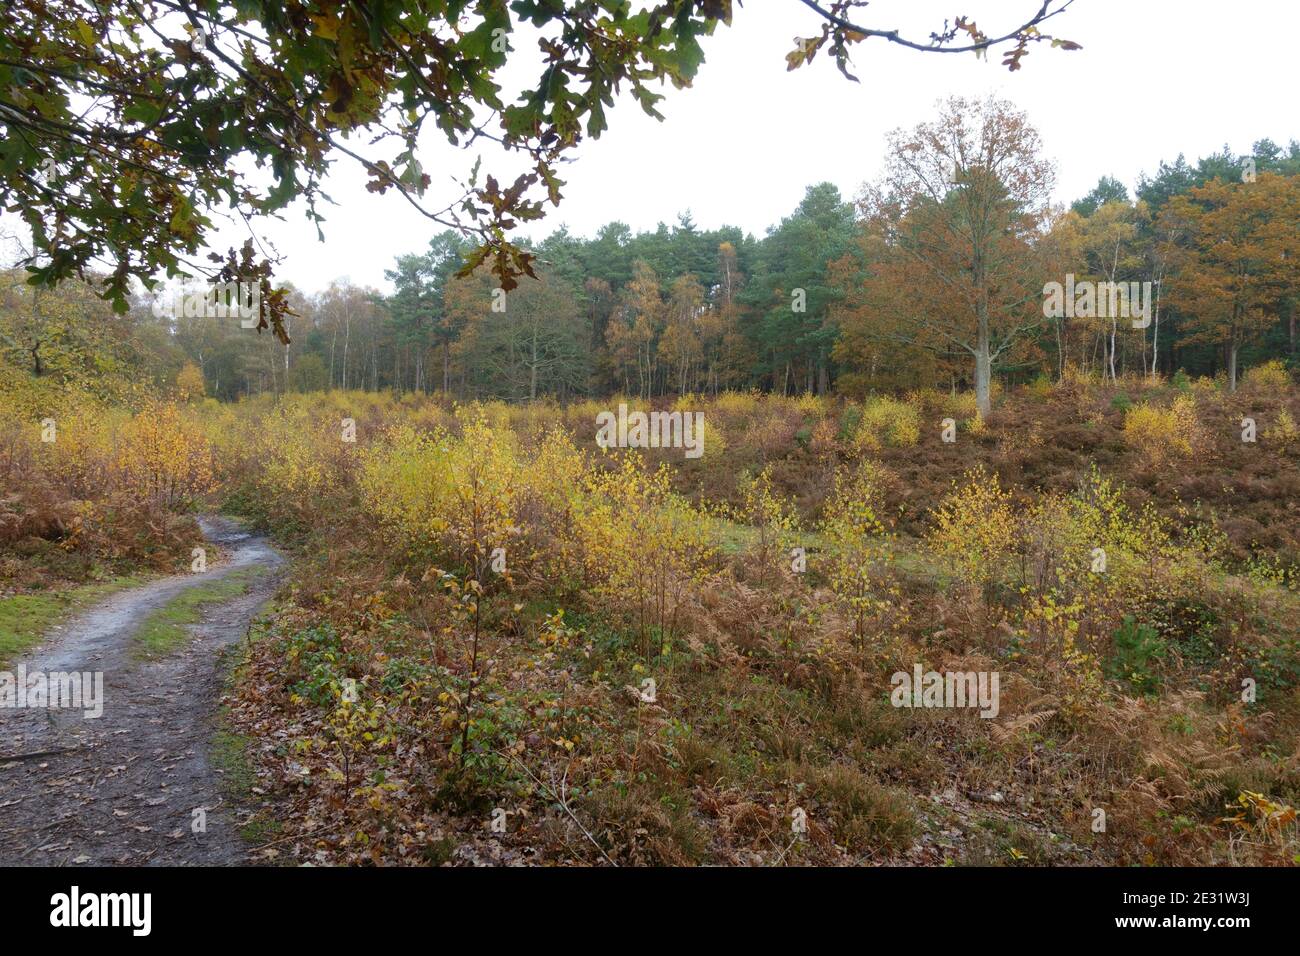 Snelsmore verbreitet im Herbst mit offenem Heide und verstreuten Silberbirken (Betula pendula) Setzlinge, Newbury, Berkshire, November Stockfoto